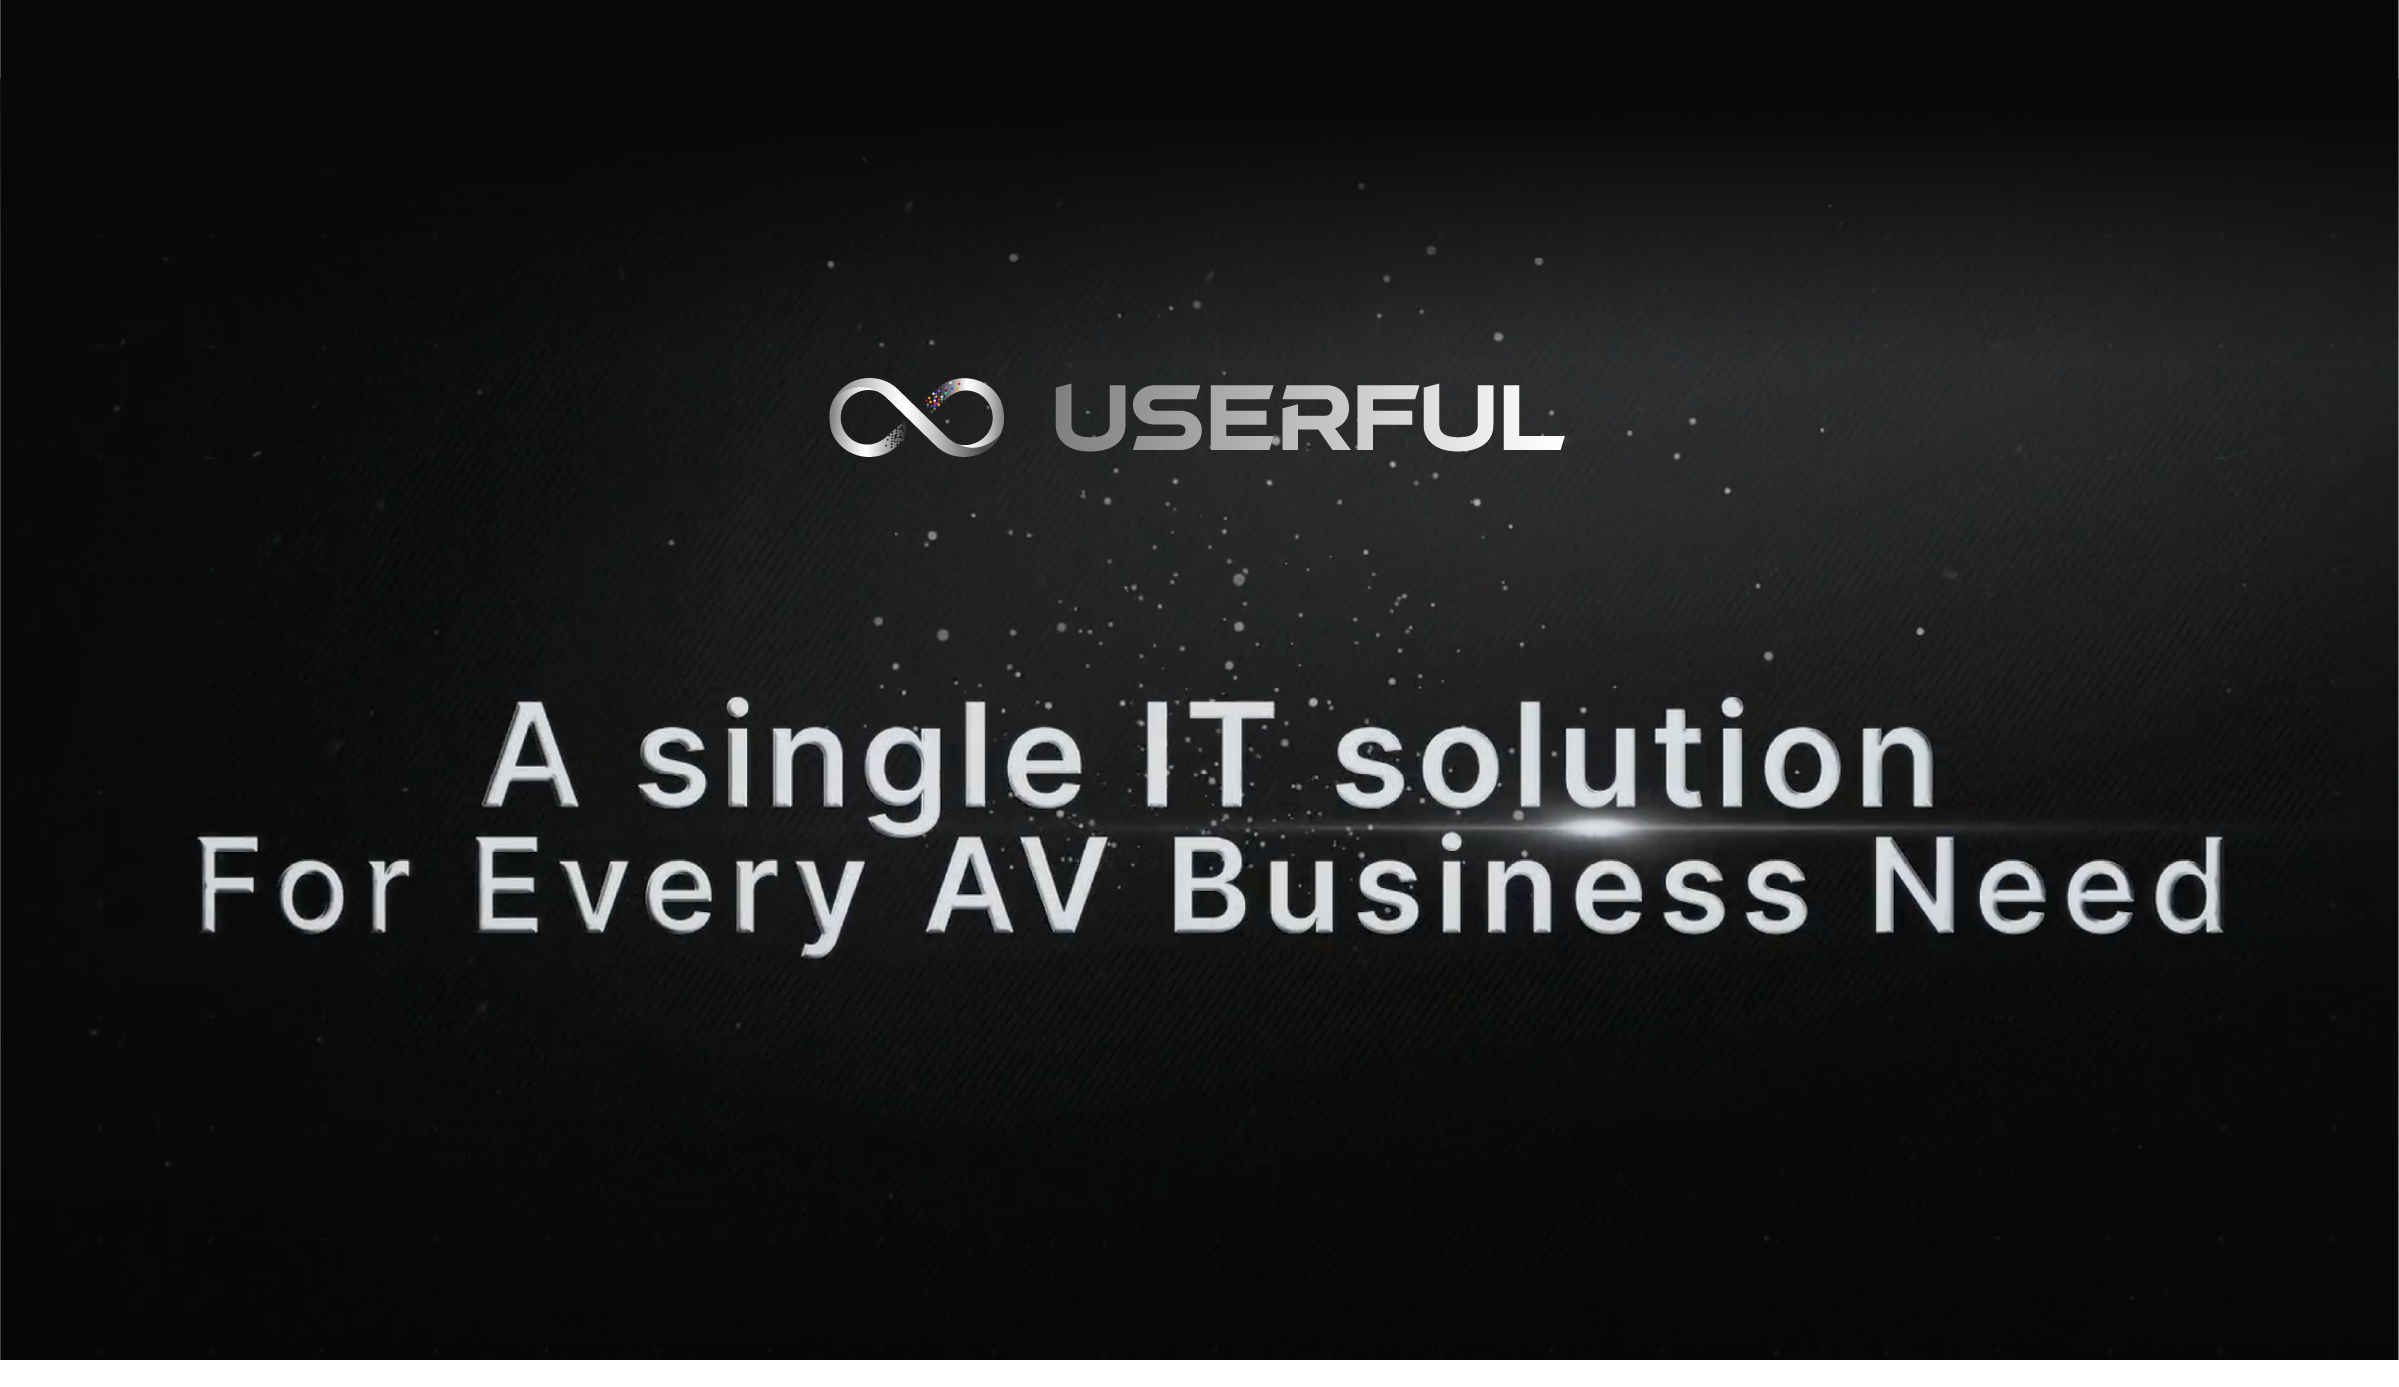 Userful - eine einzigartige IT-Lösung für jedes AV-Unternehmen